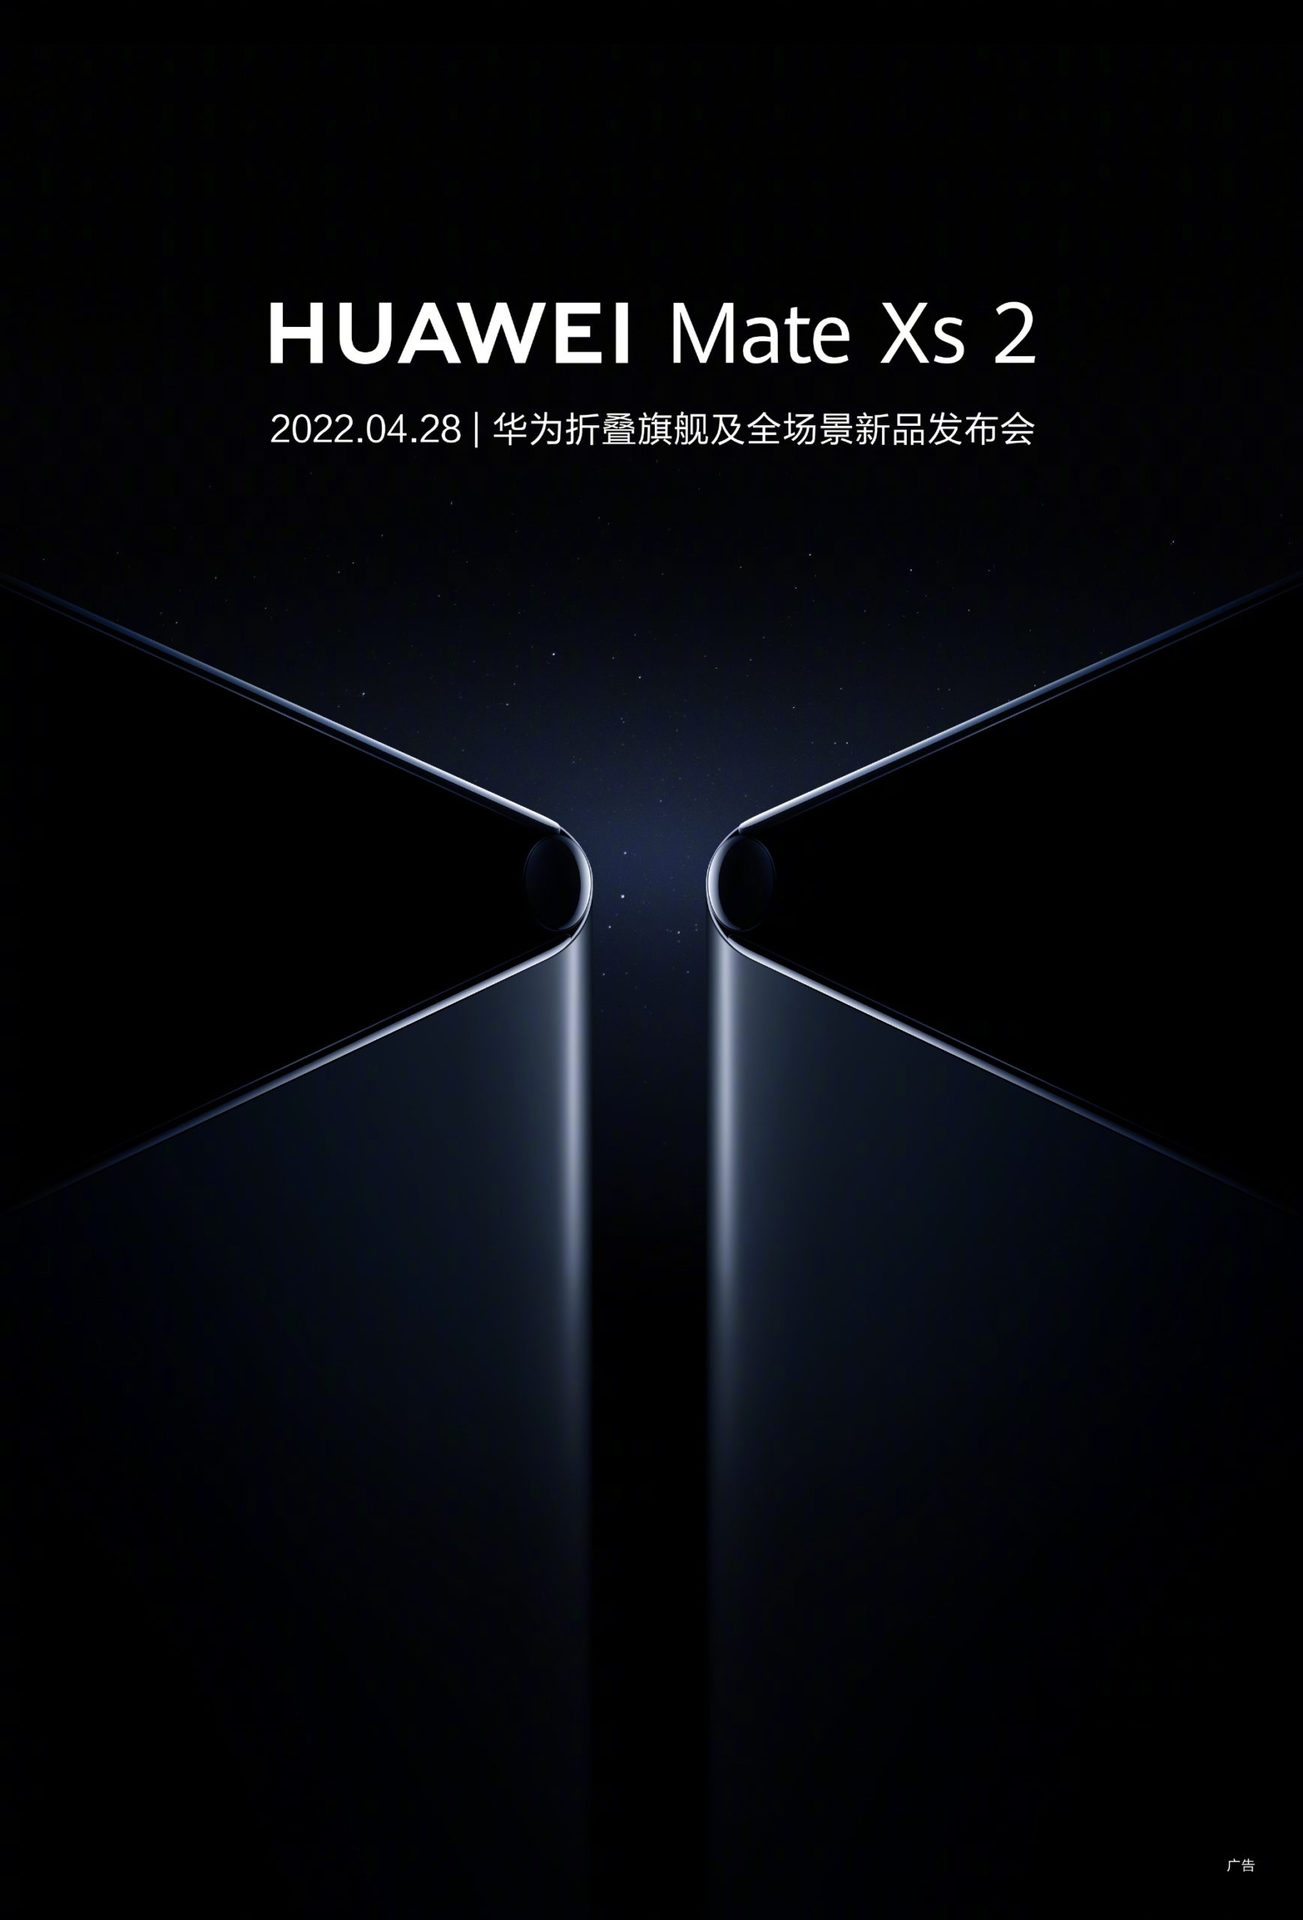 HUAWEI Mate XS 2 weibo